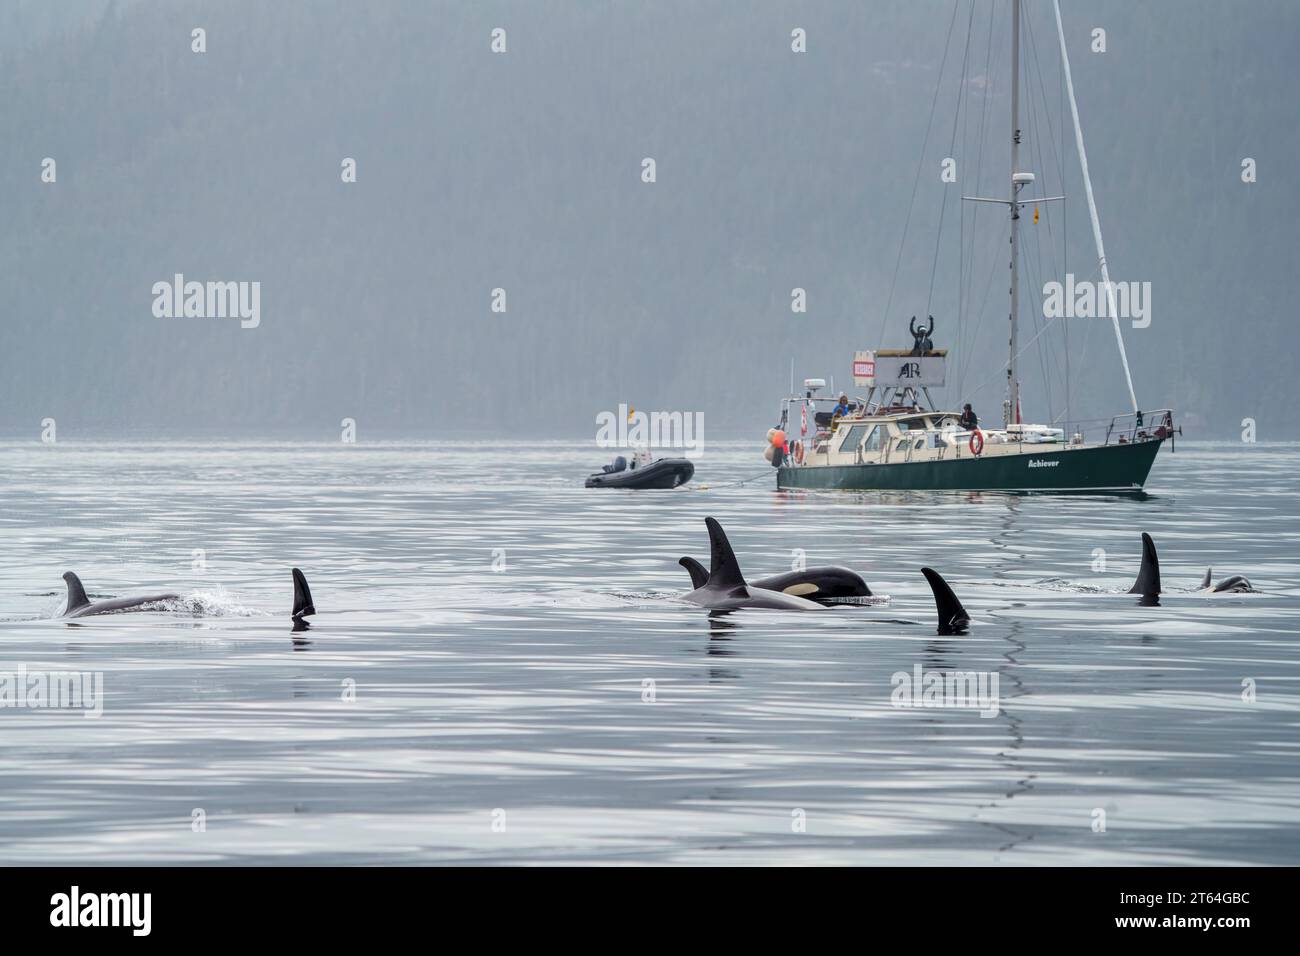 Baleines Orca Resident du Nord (épaulards, Orcinus orca) devant le voilier de recherche 'Archiever' (Raincoast conservation Foundation) à Johns Banque D'Images